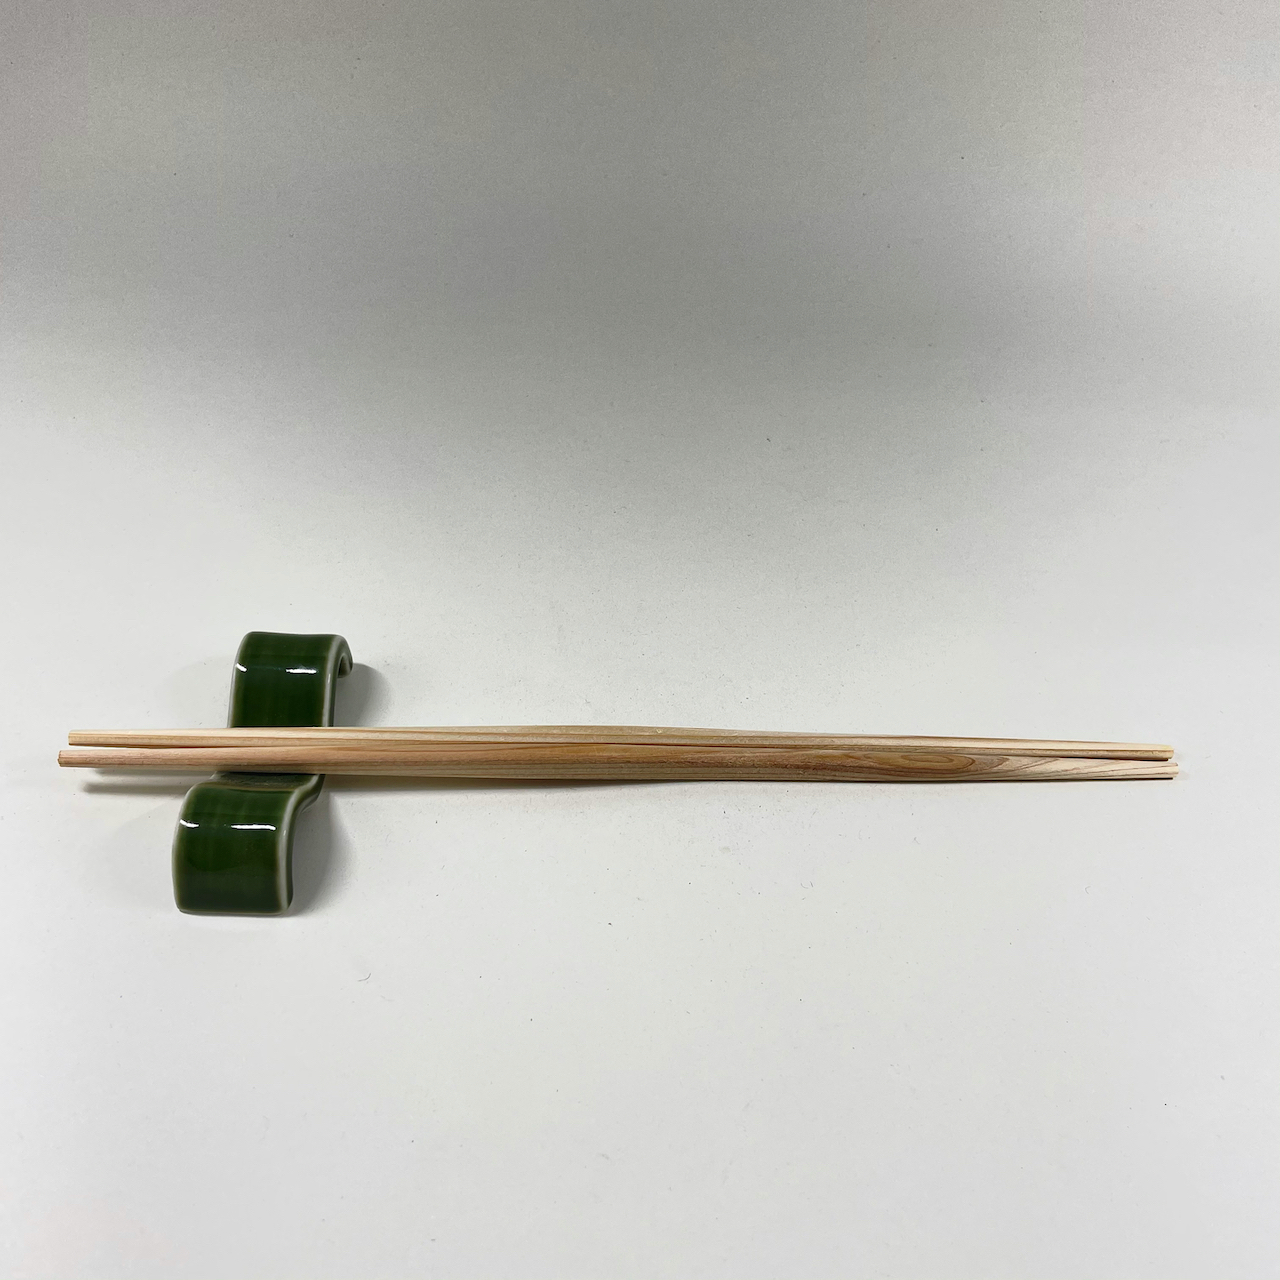 茶緑波形箸置画像